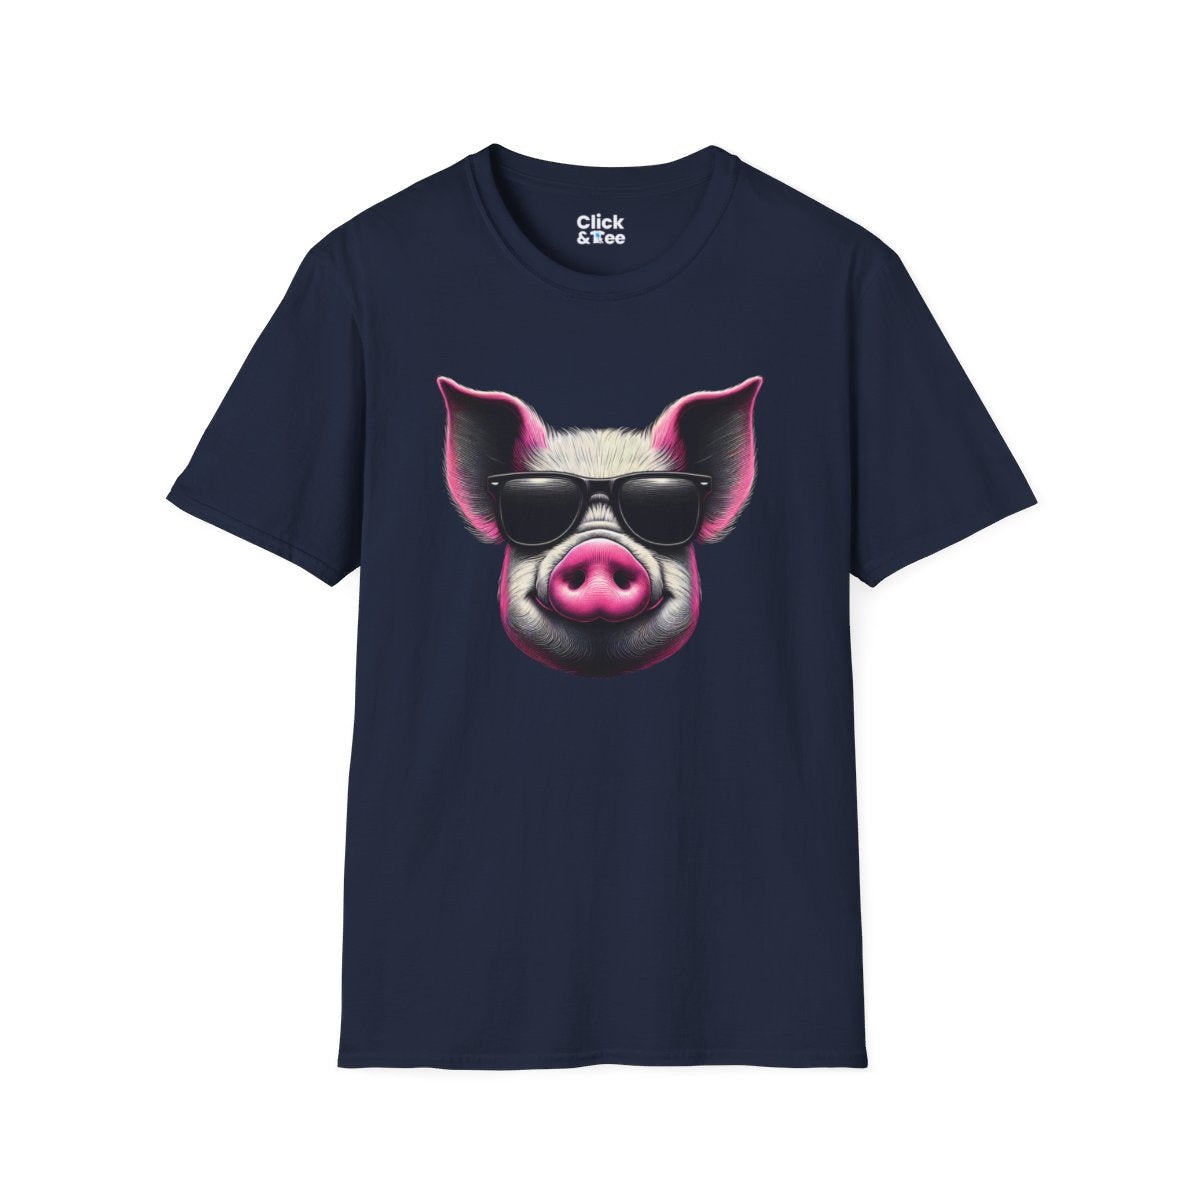 Graphic ArtPink Pig Face Unique T-Shirt Image 18